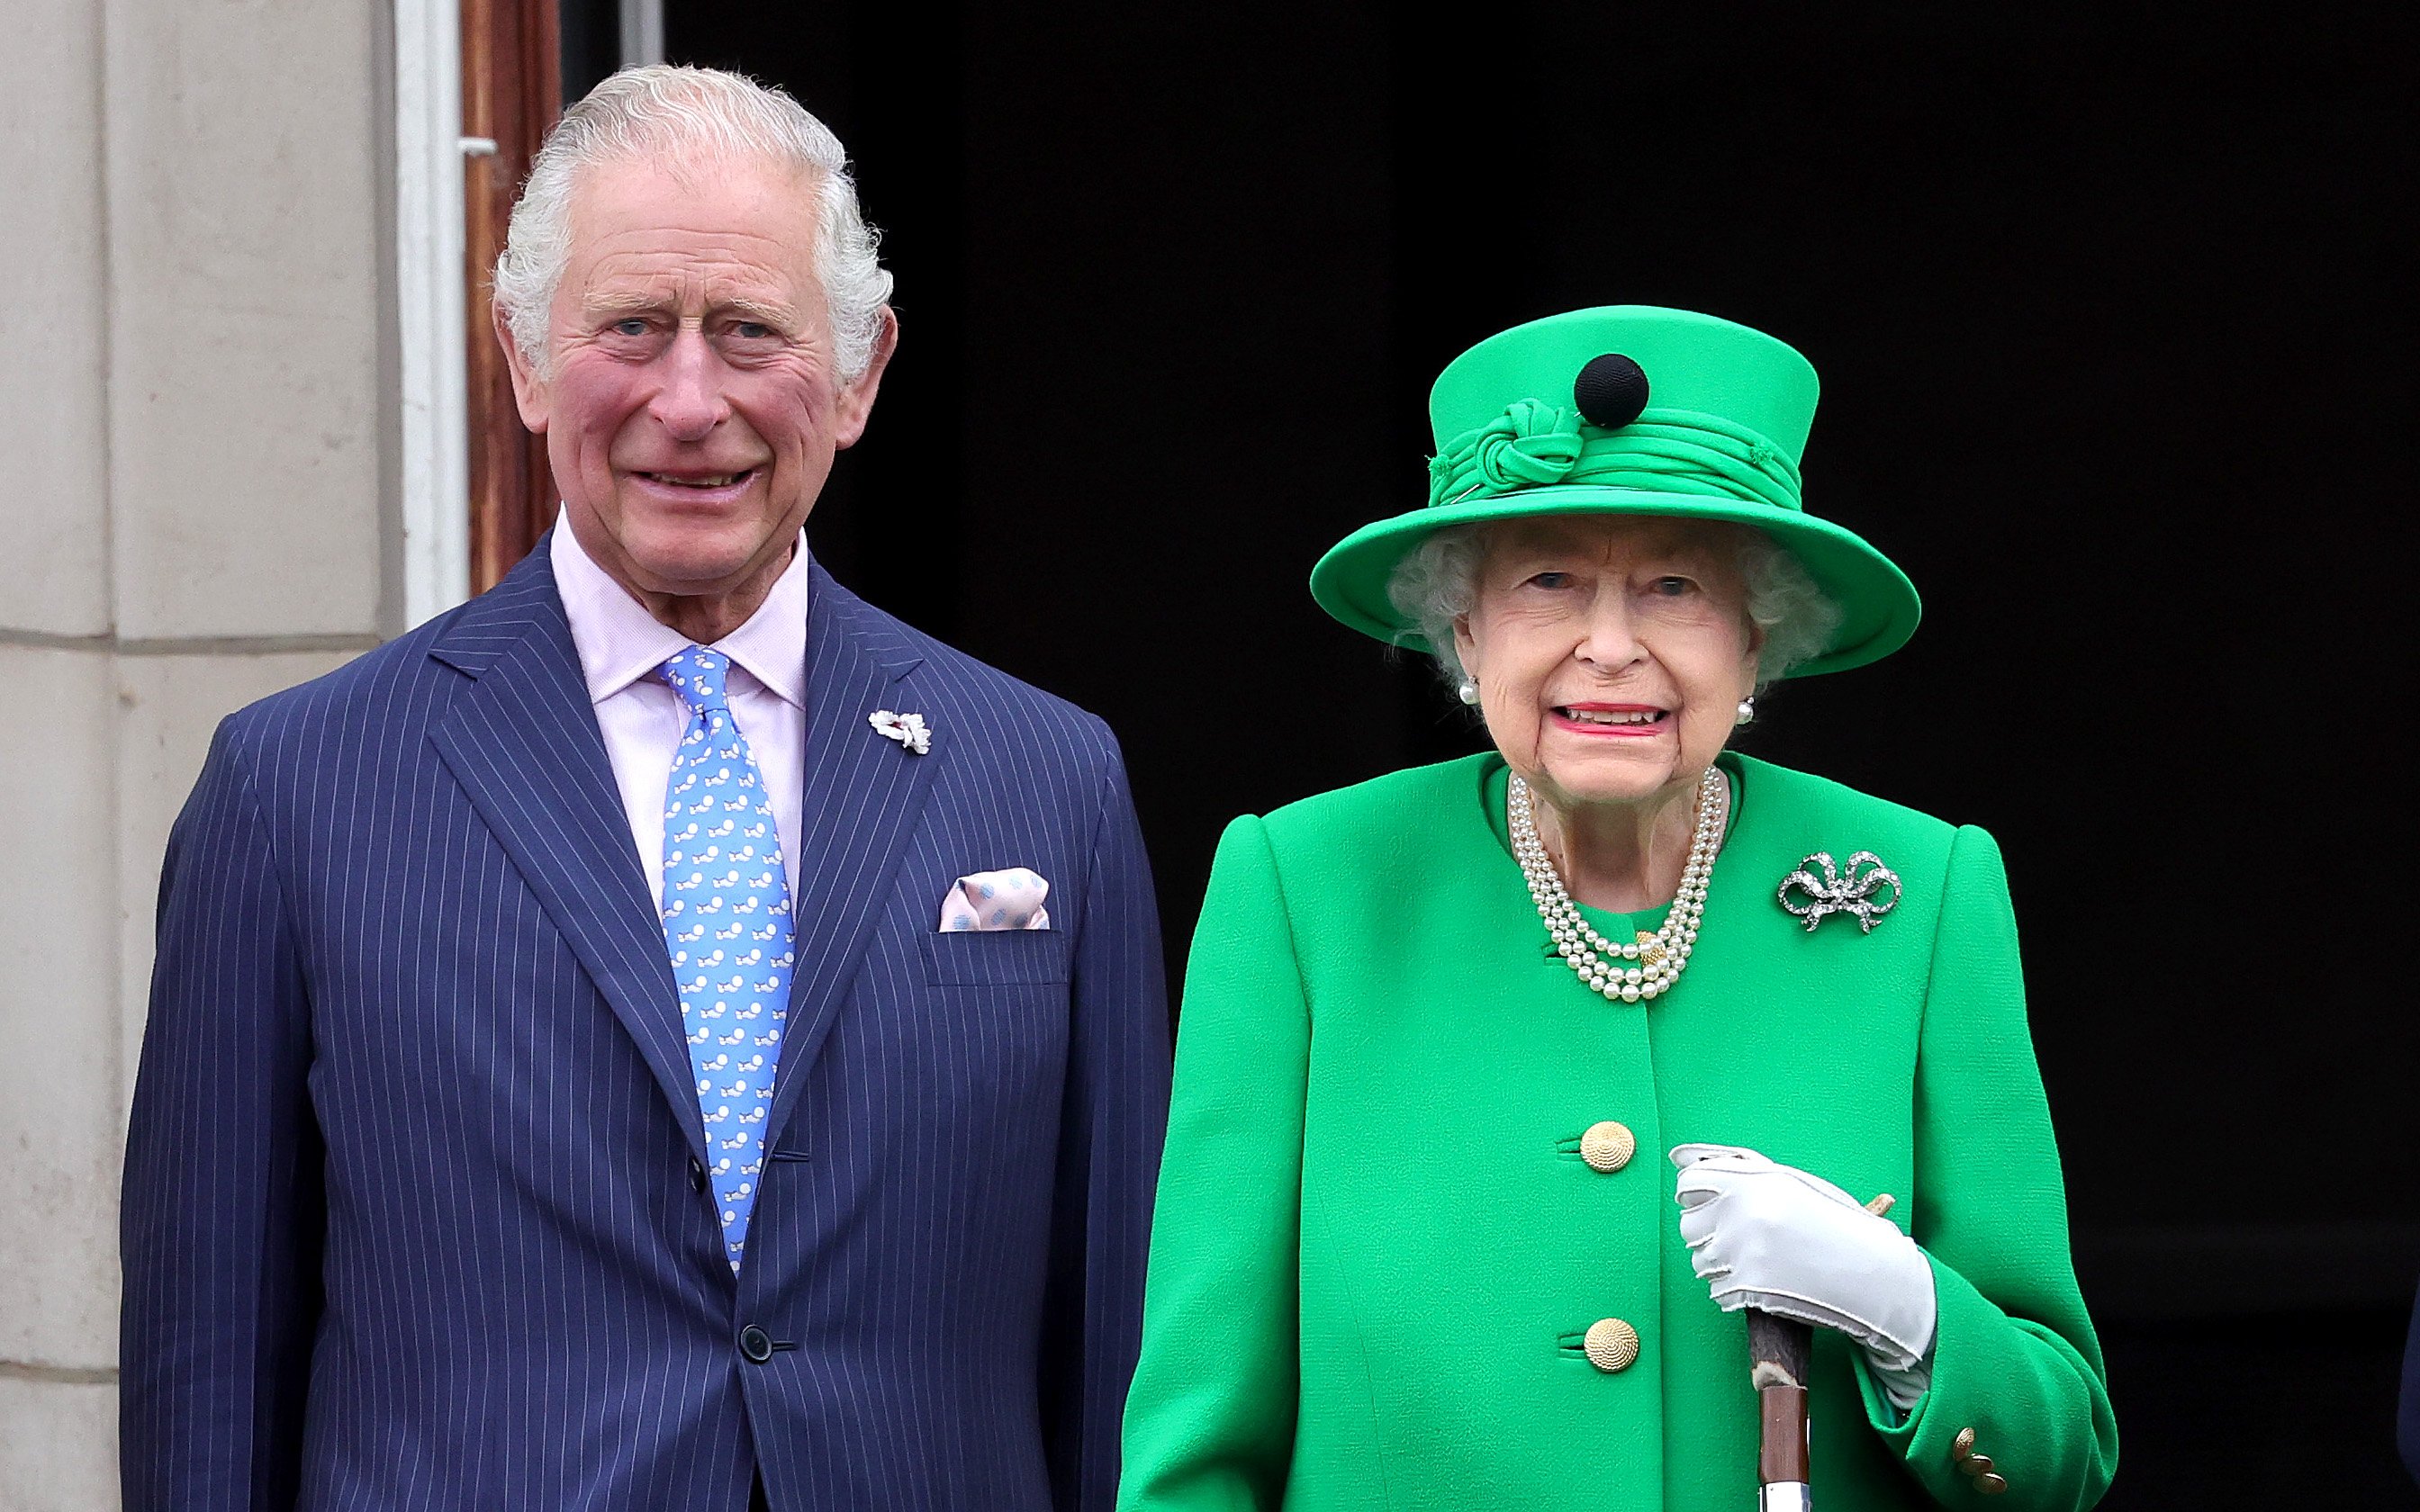 Königin Elizabeth II. und Charles, Prinz von Wales, auf dem Balkon des Buckingham Palace am 5. Juni 2022 | Quelle: Getty Images